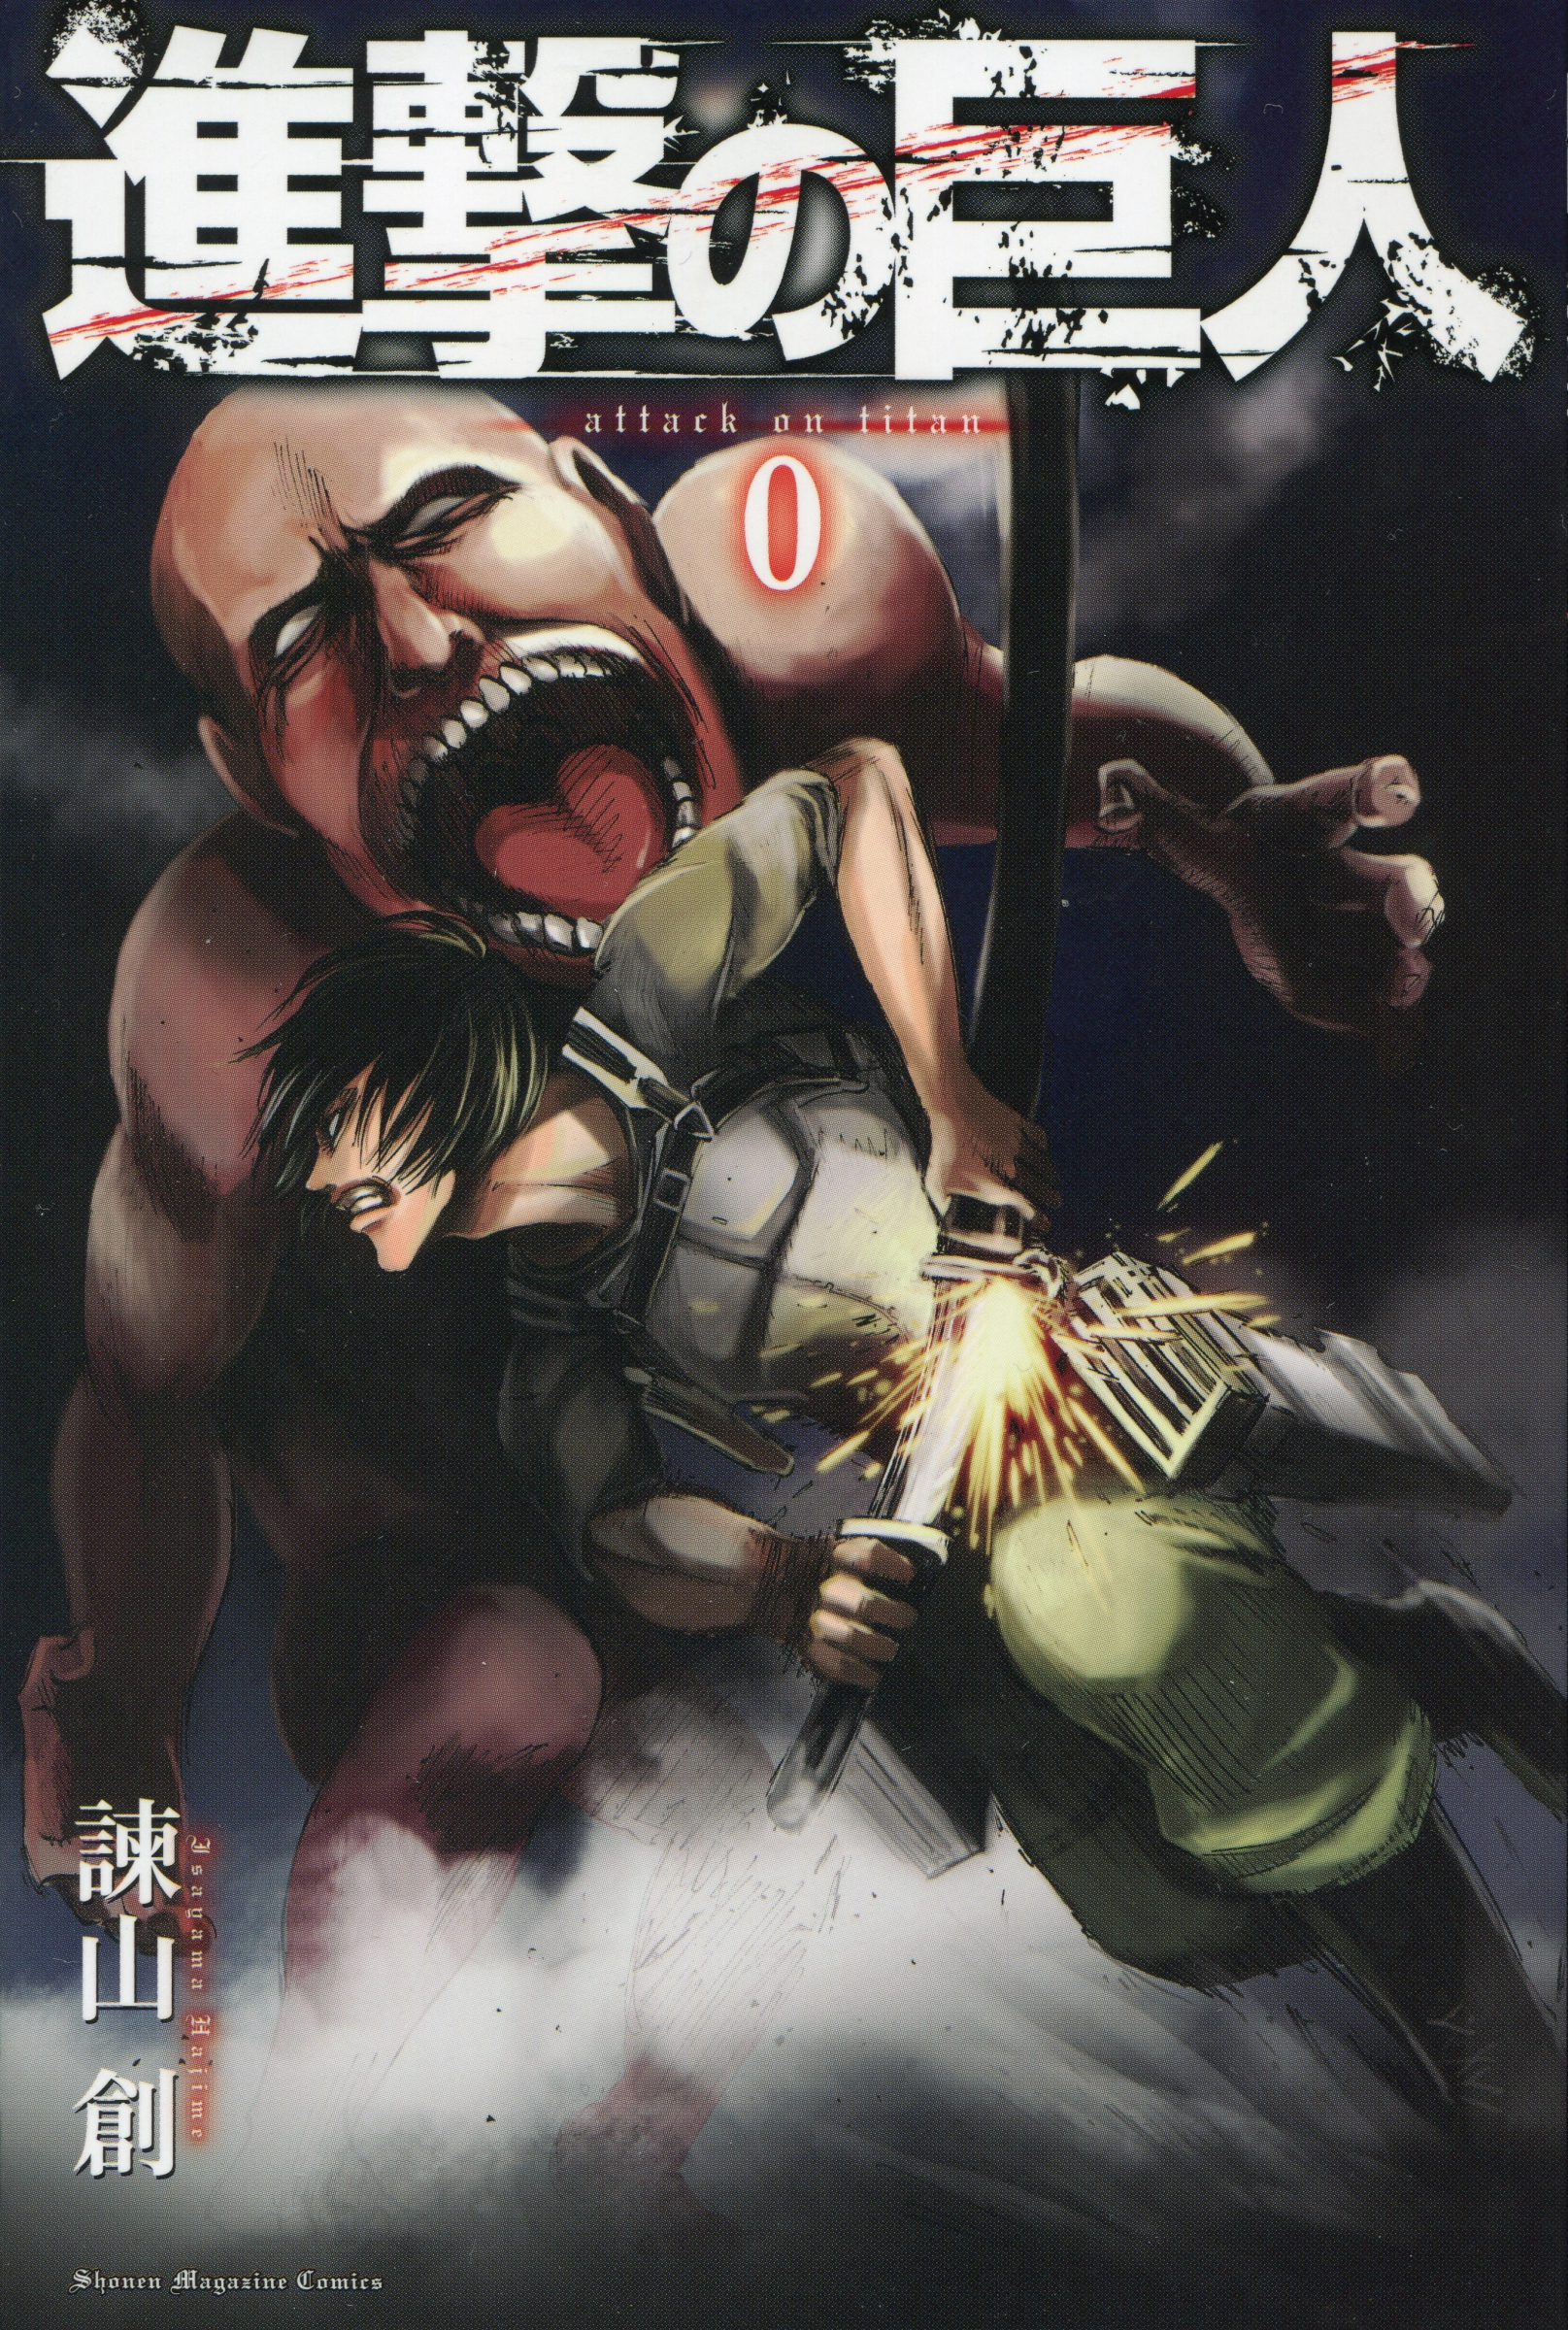 Attack on Titan Part 2: Jiyuu no Tsubasa, Attack on Titan Wiki